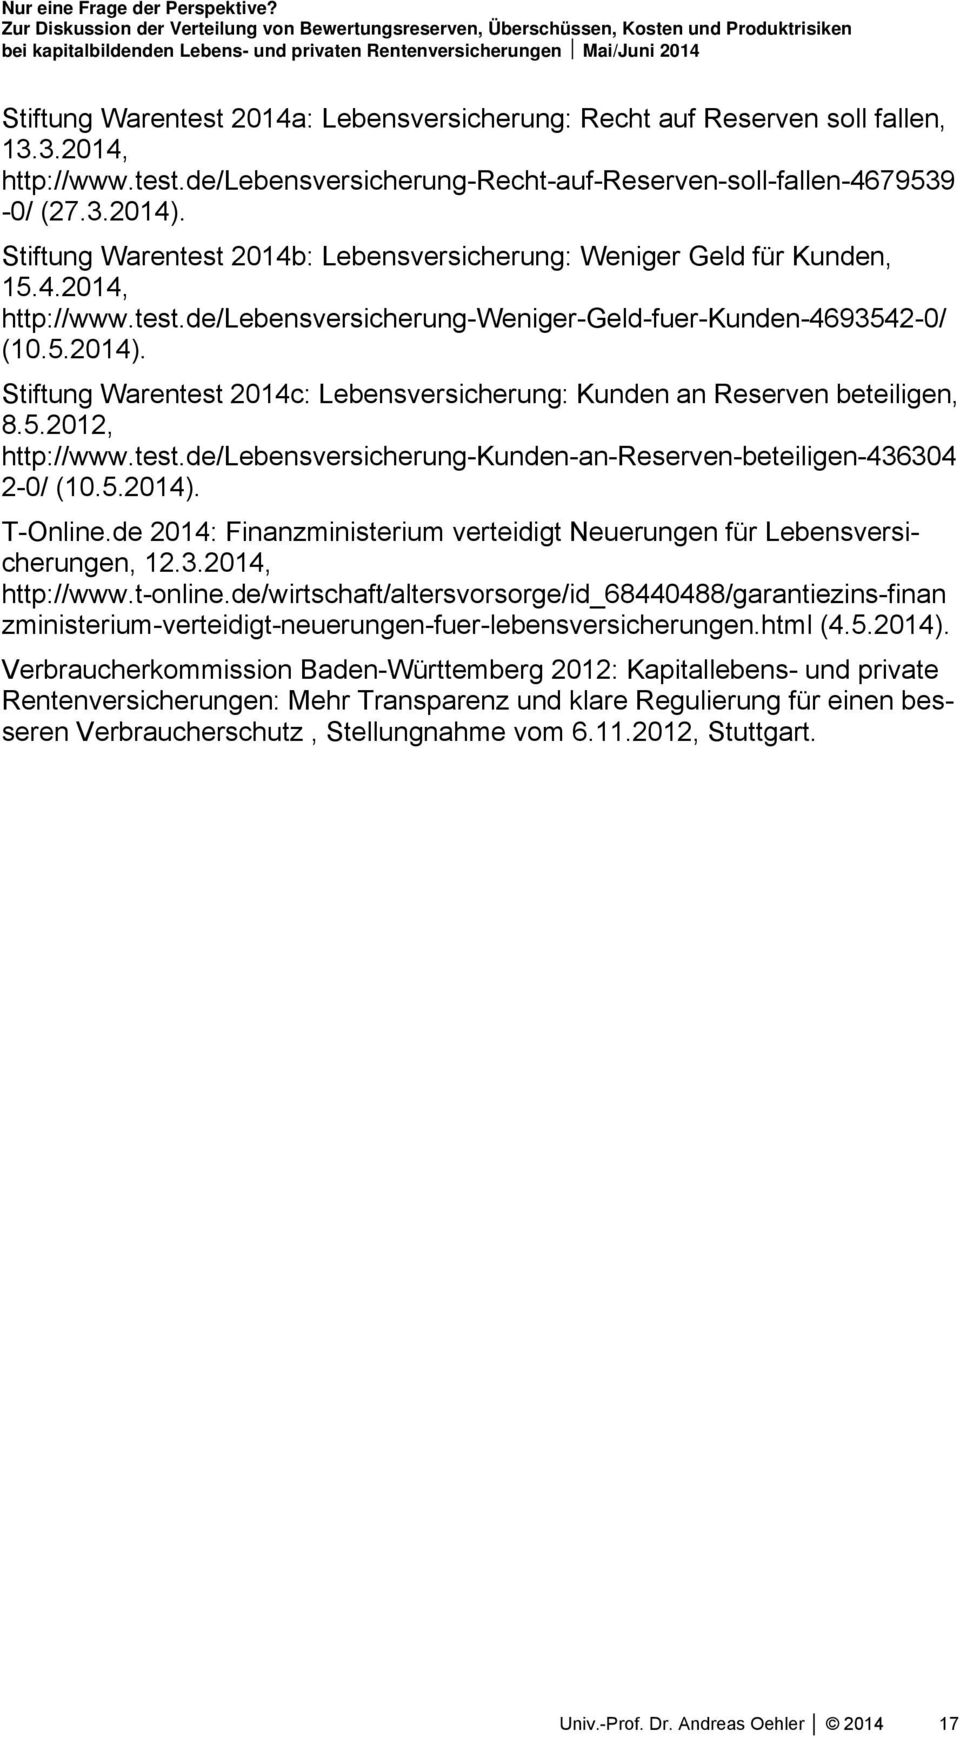 Stiftung Warentest 2014c: Lebensversicherung: Kunden an Reserven beteiligen, 8.5.2012, http://www.test.de/lebensversicherung-kunden-an-reserven-beteiligen-436304 2-0/ (10.5.2014). T-Online.